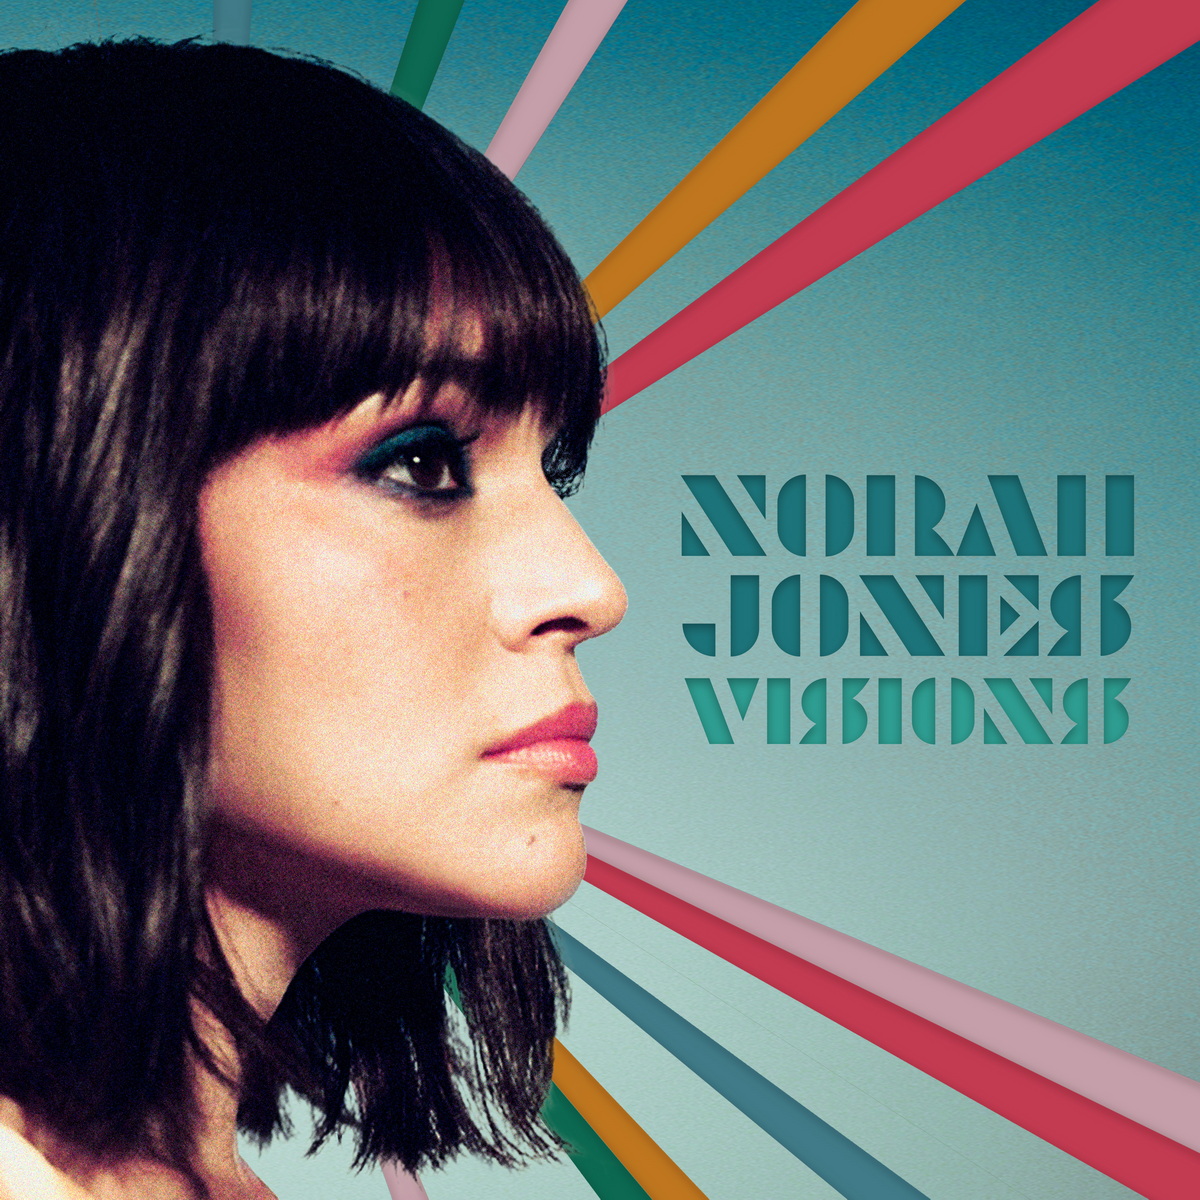 Blue Note zapowiada dziewiąty album studyjny Norah Jones pt. „Visions”